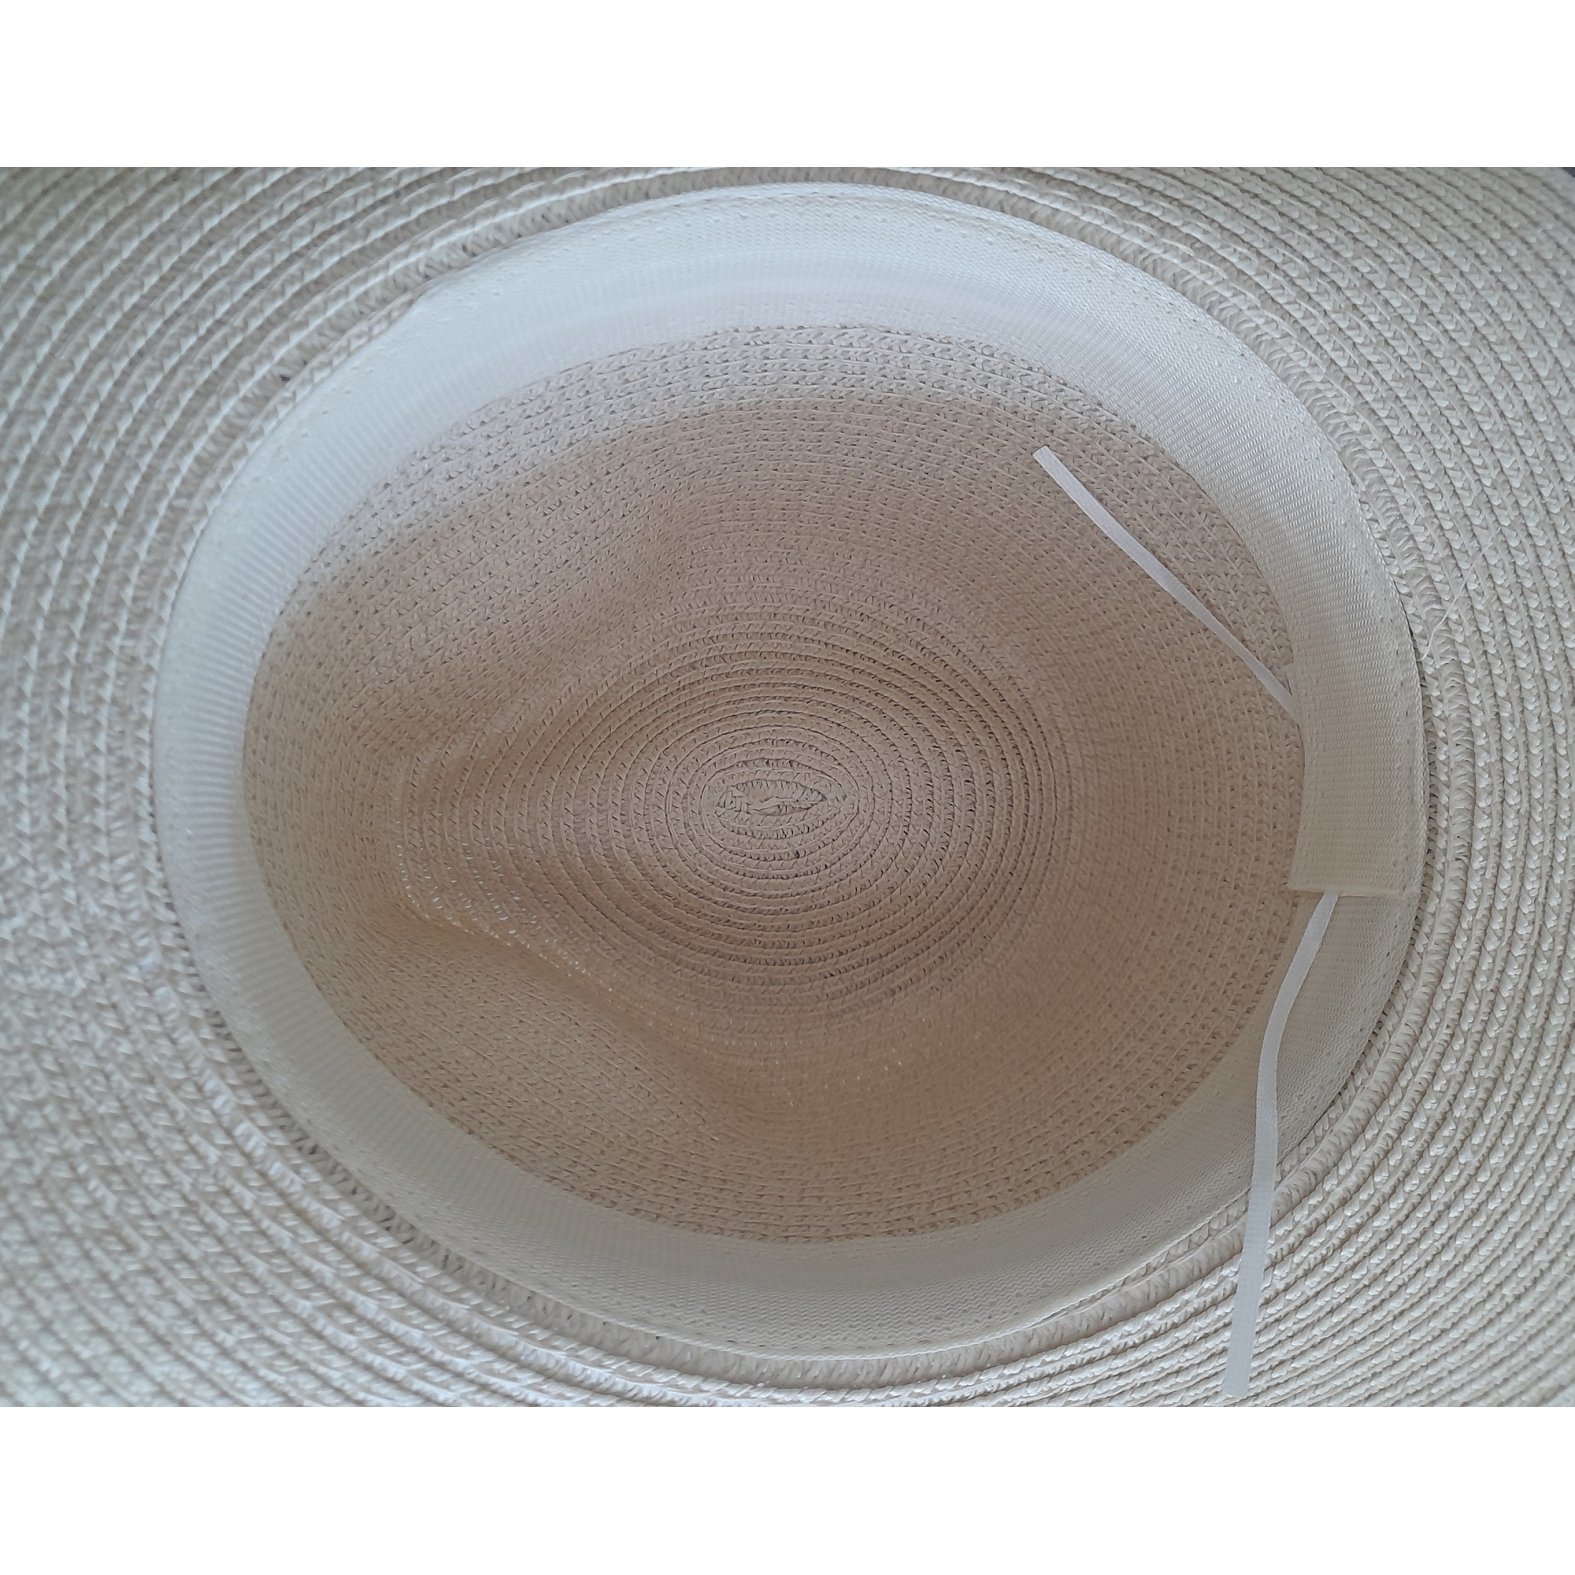 Un joli chapeau style Panama en paille enduite pour une meilleure protection